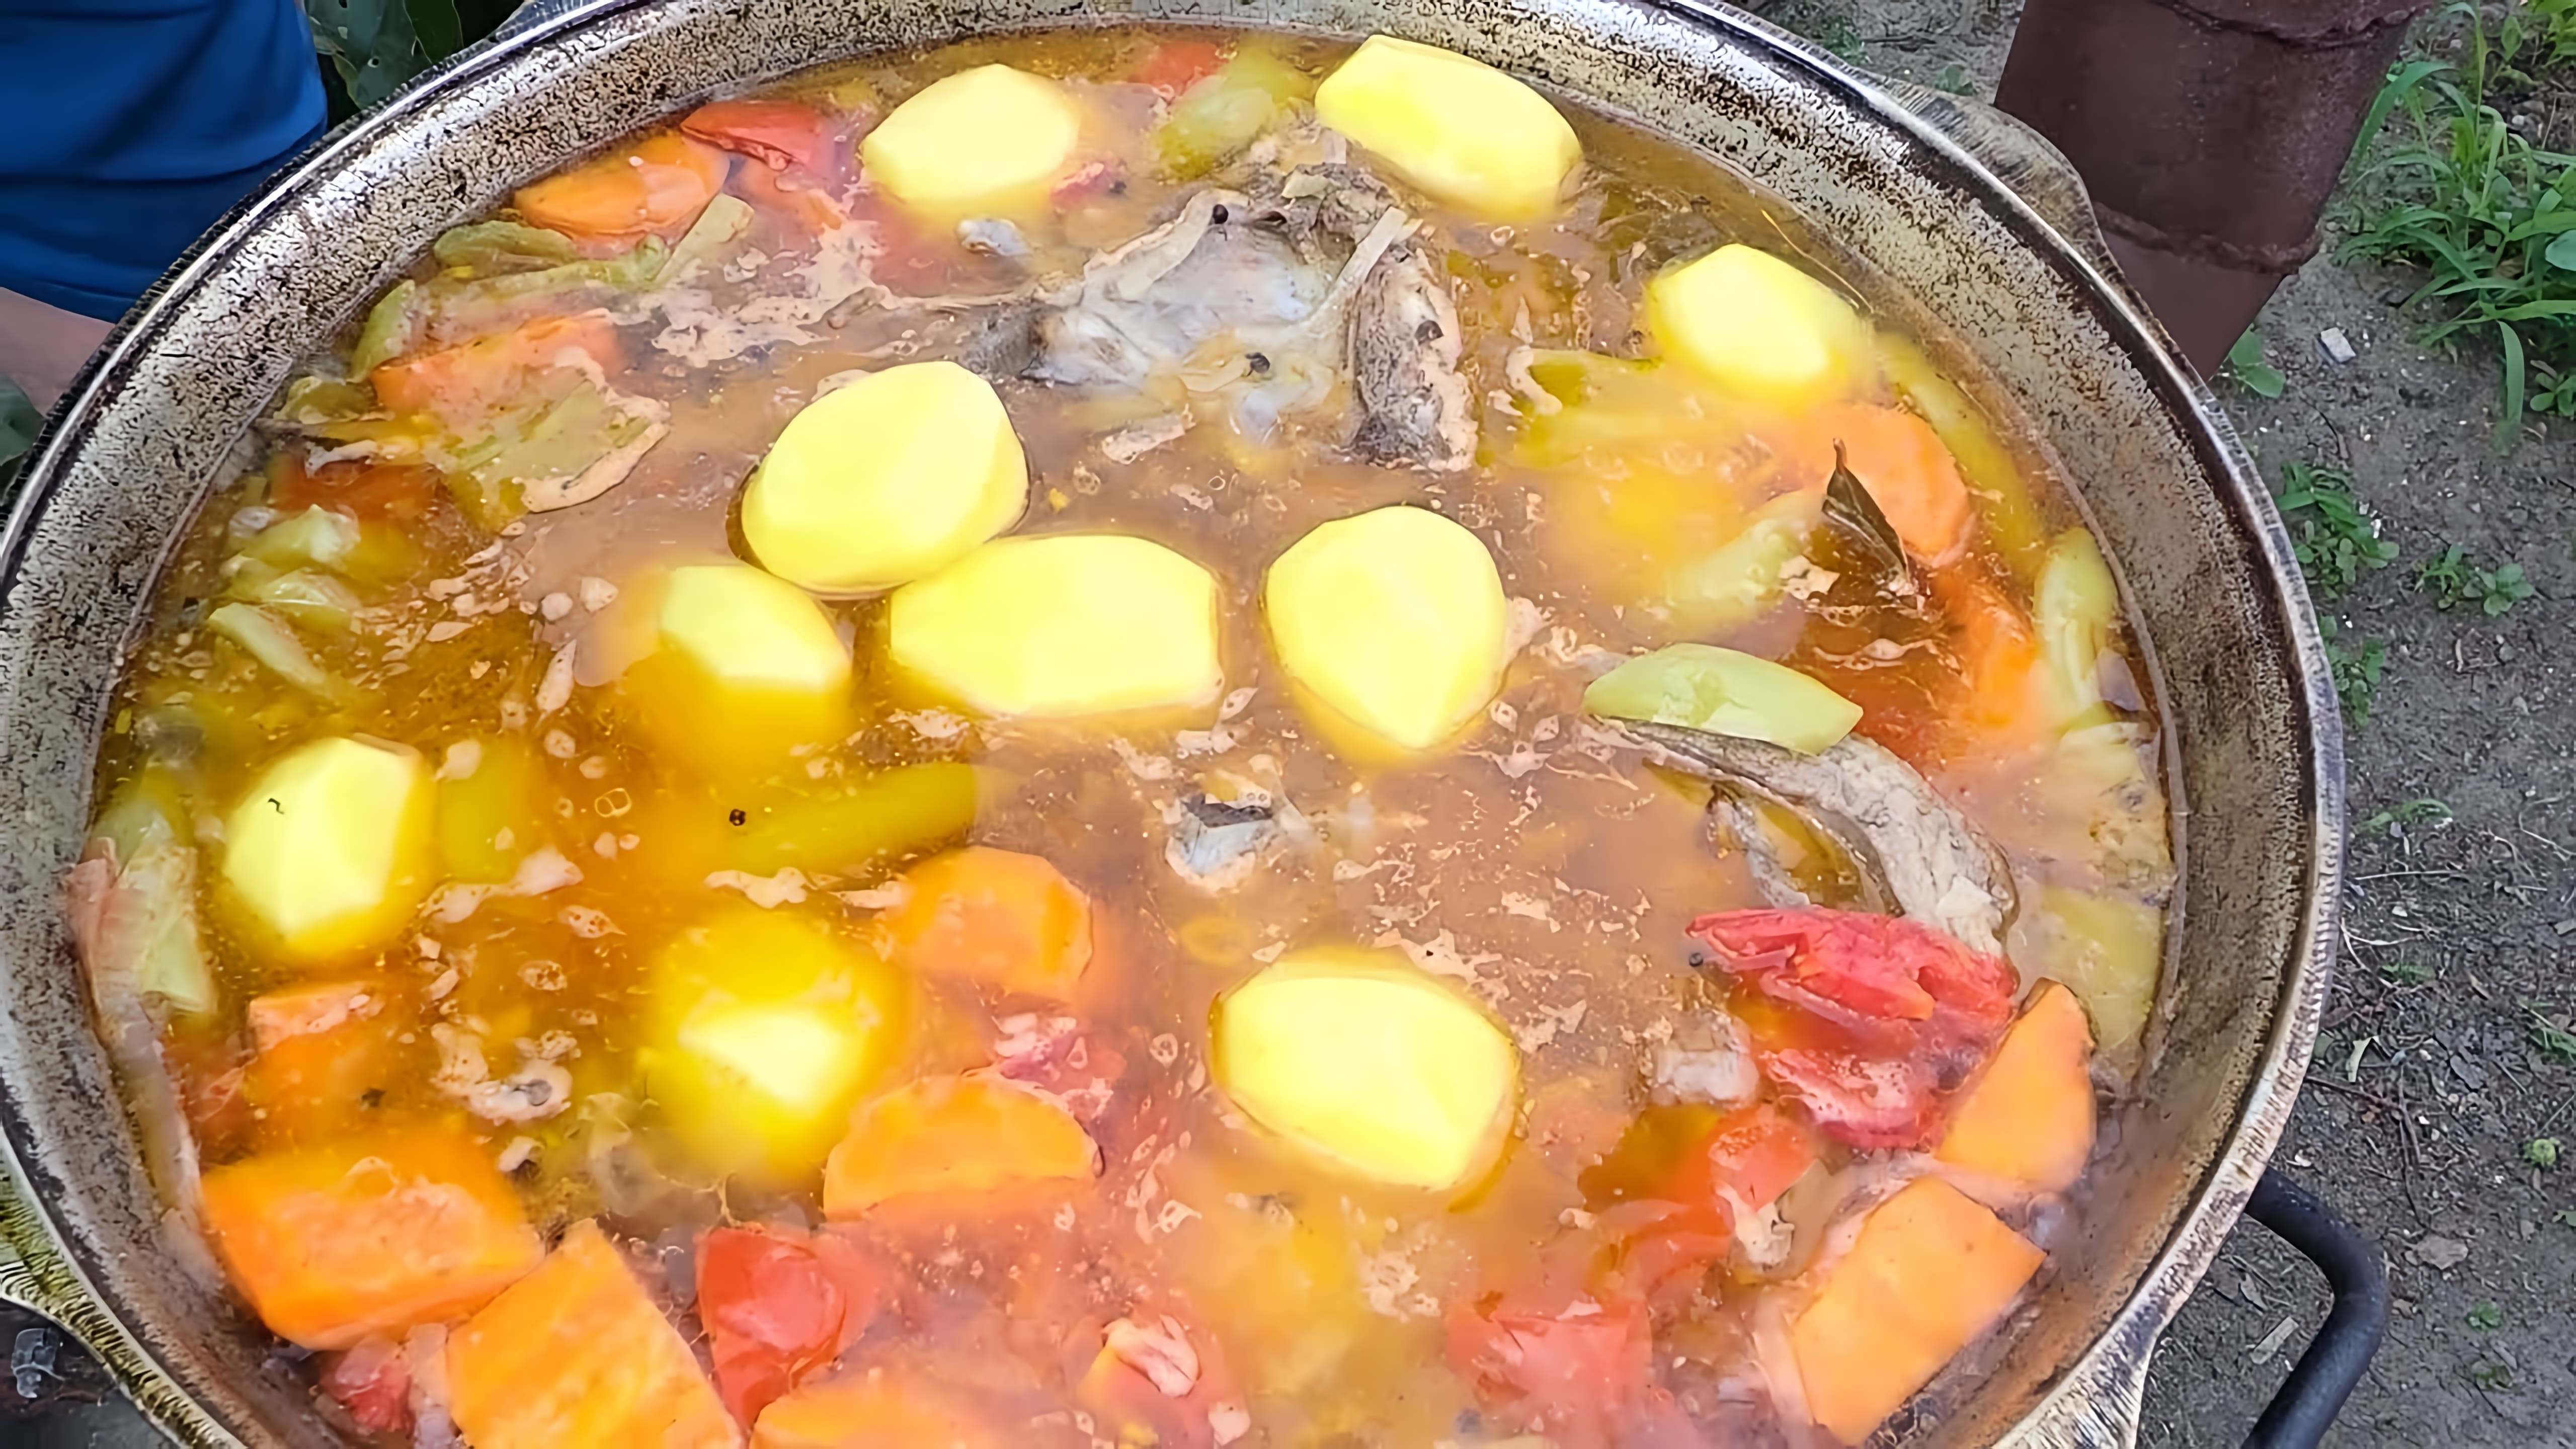 В этом видео демонстрируется процесс приготовления шурпы, традиционного блюда из баранины и говядины в казане на свежем воздухе